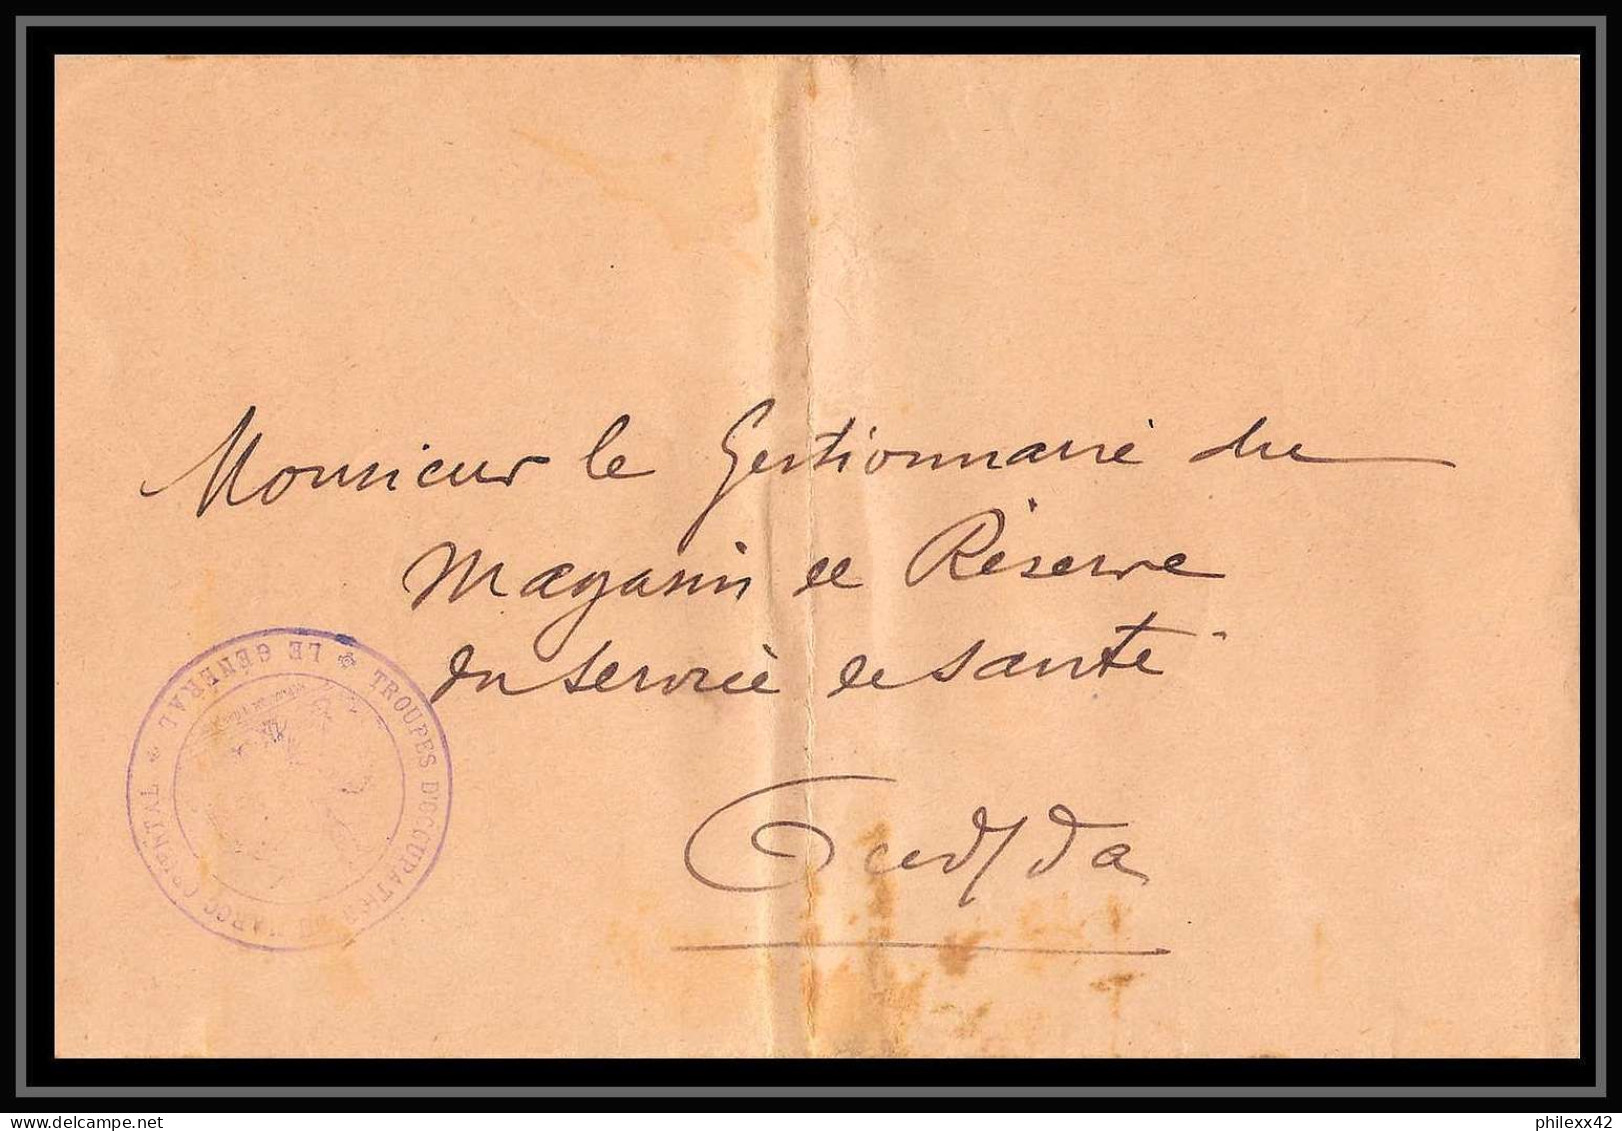 1210 lot 9 lettres France guerre général commandant Oudjda 1915 dont service de santé cover occupation du maroc War